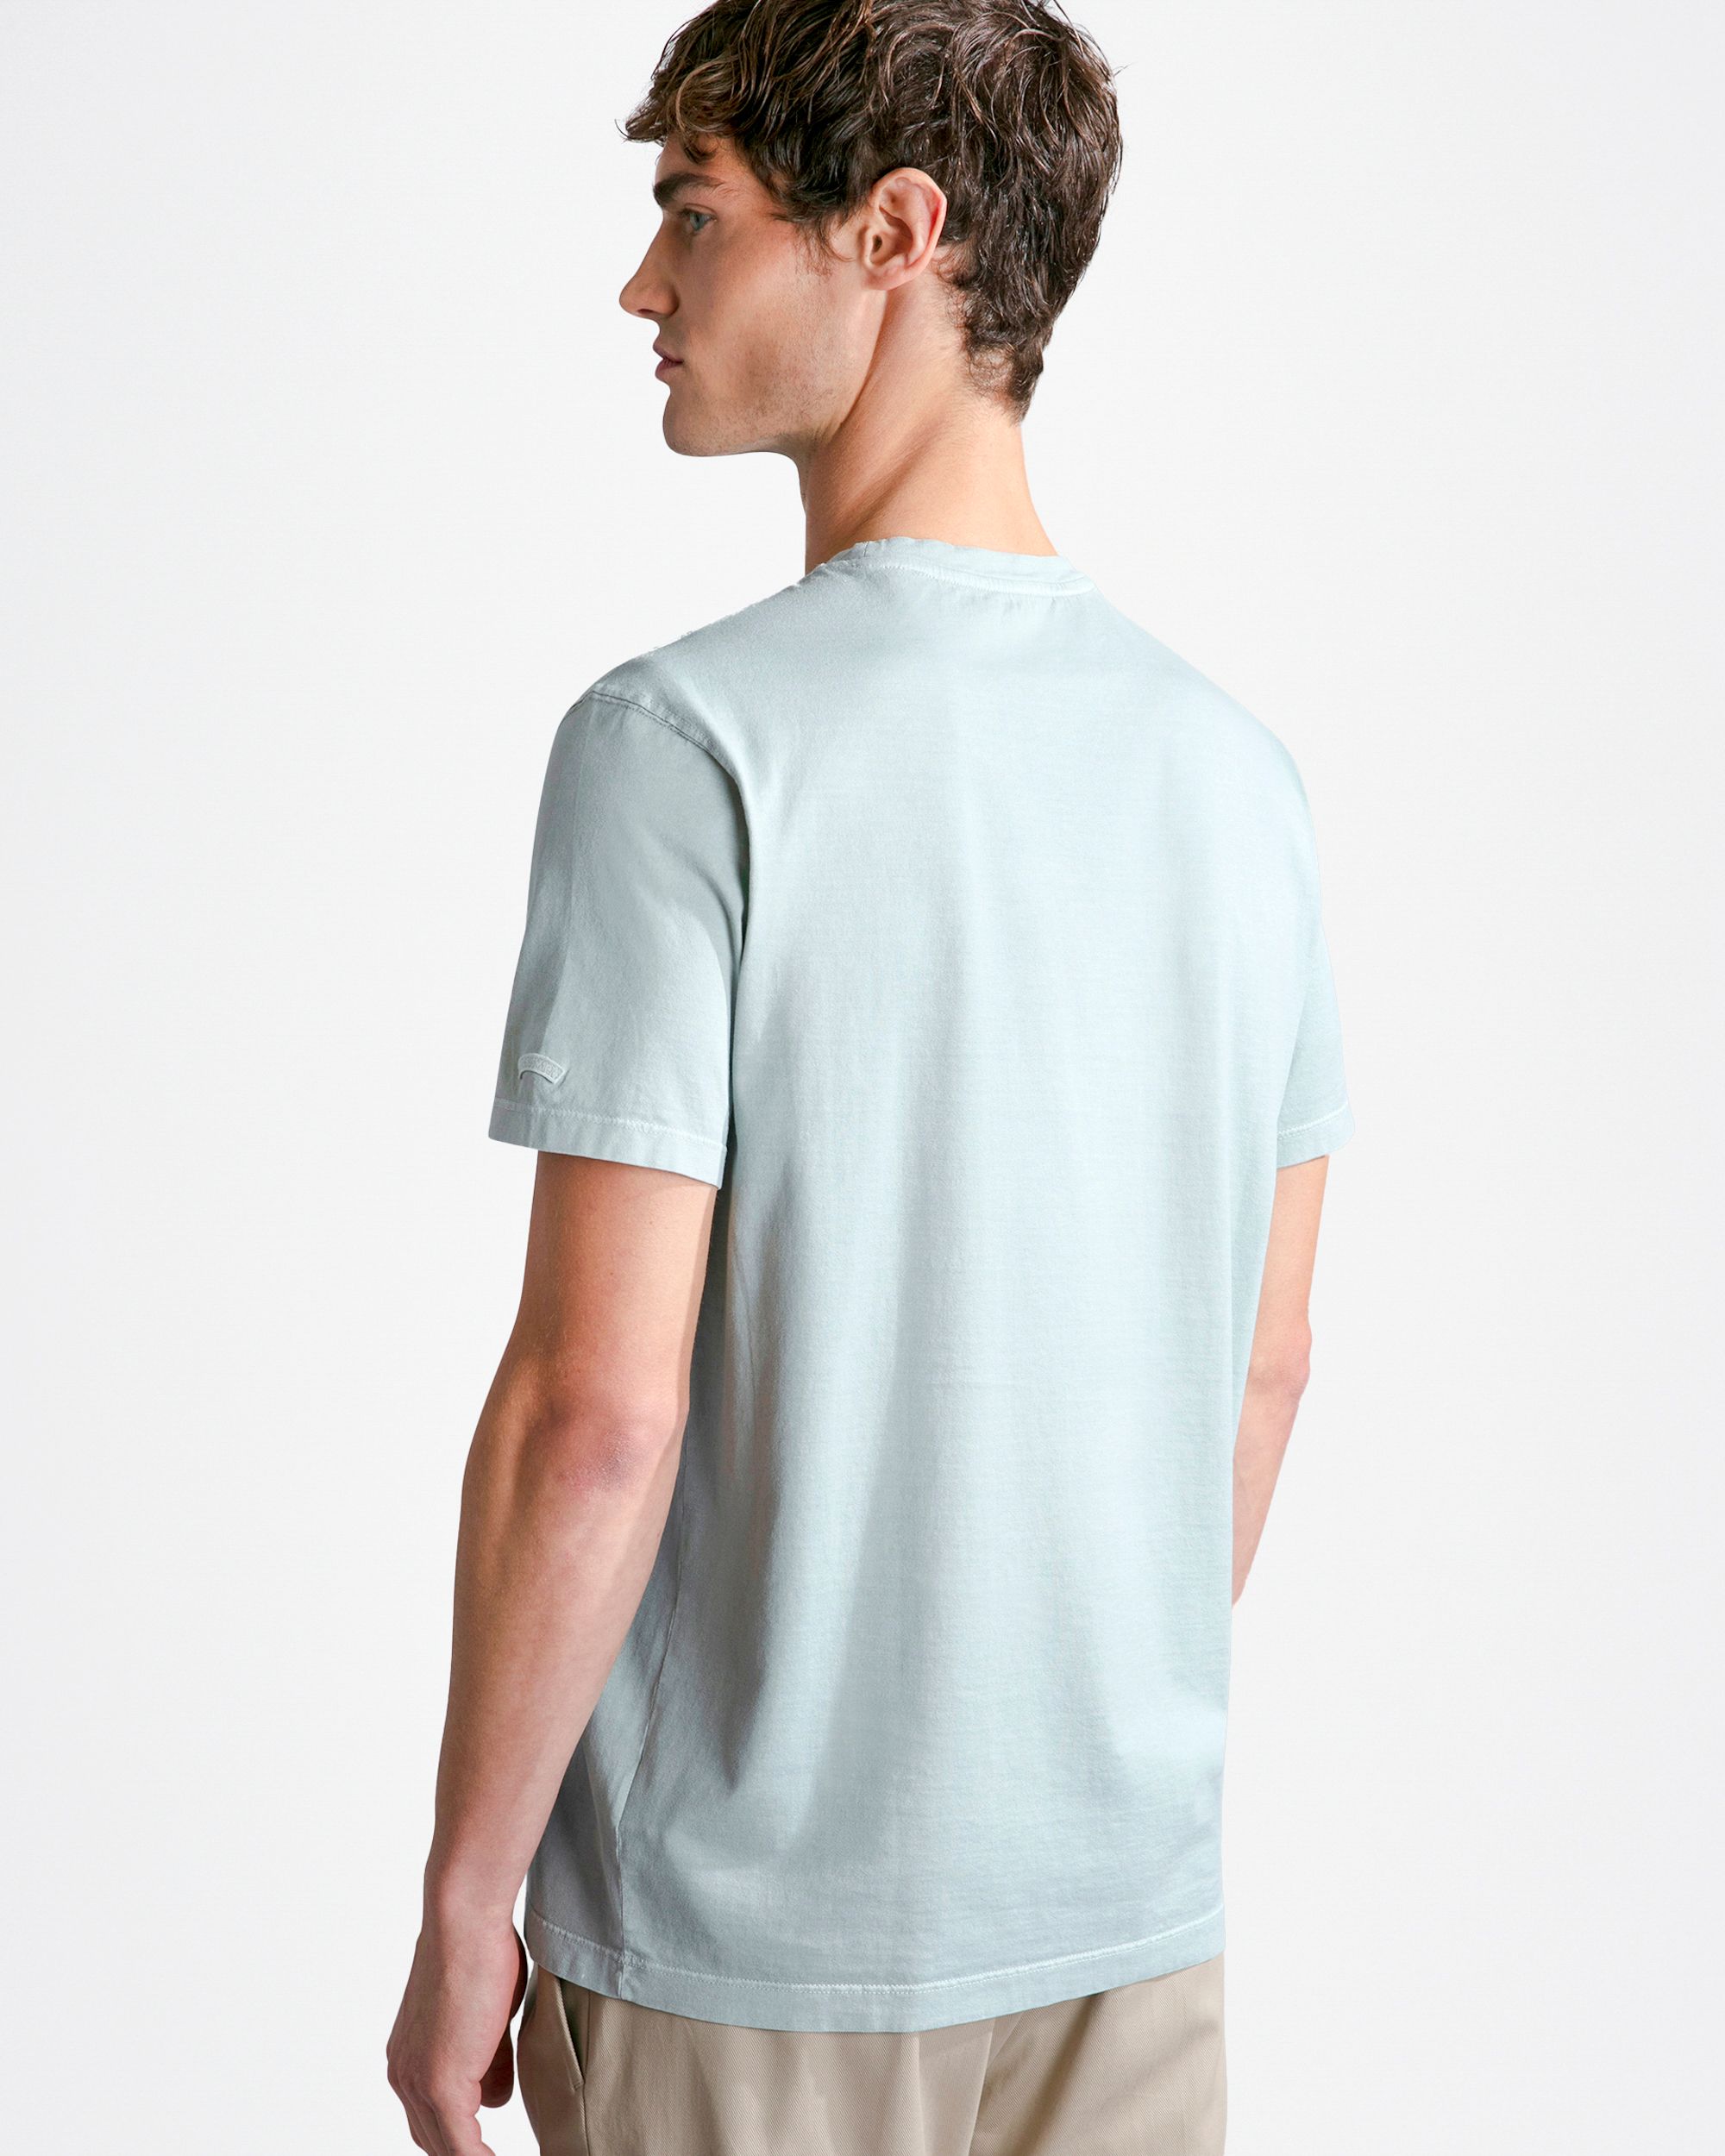 Paul & Shark T-shirt KM Blauw 092036-001-XL